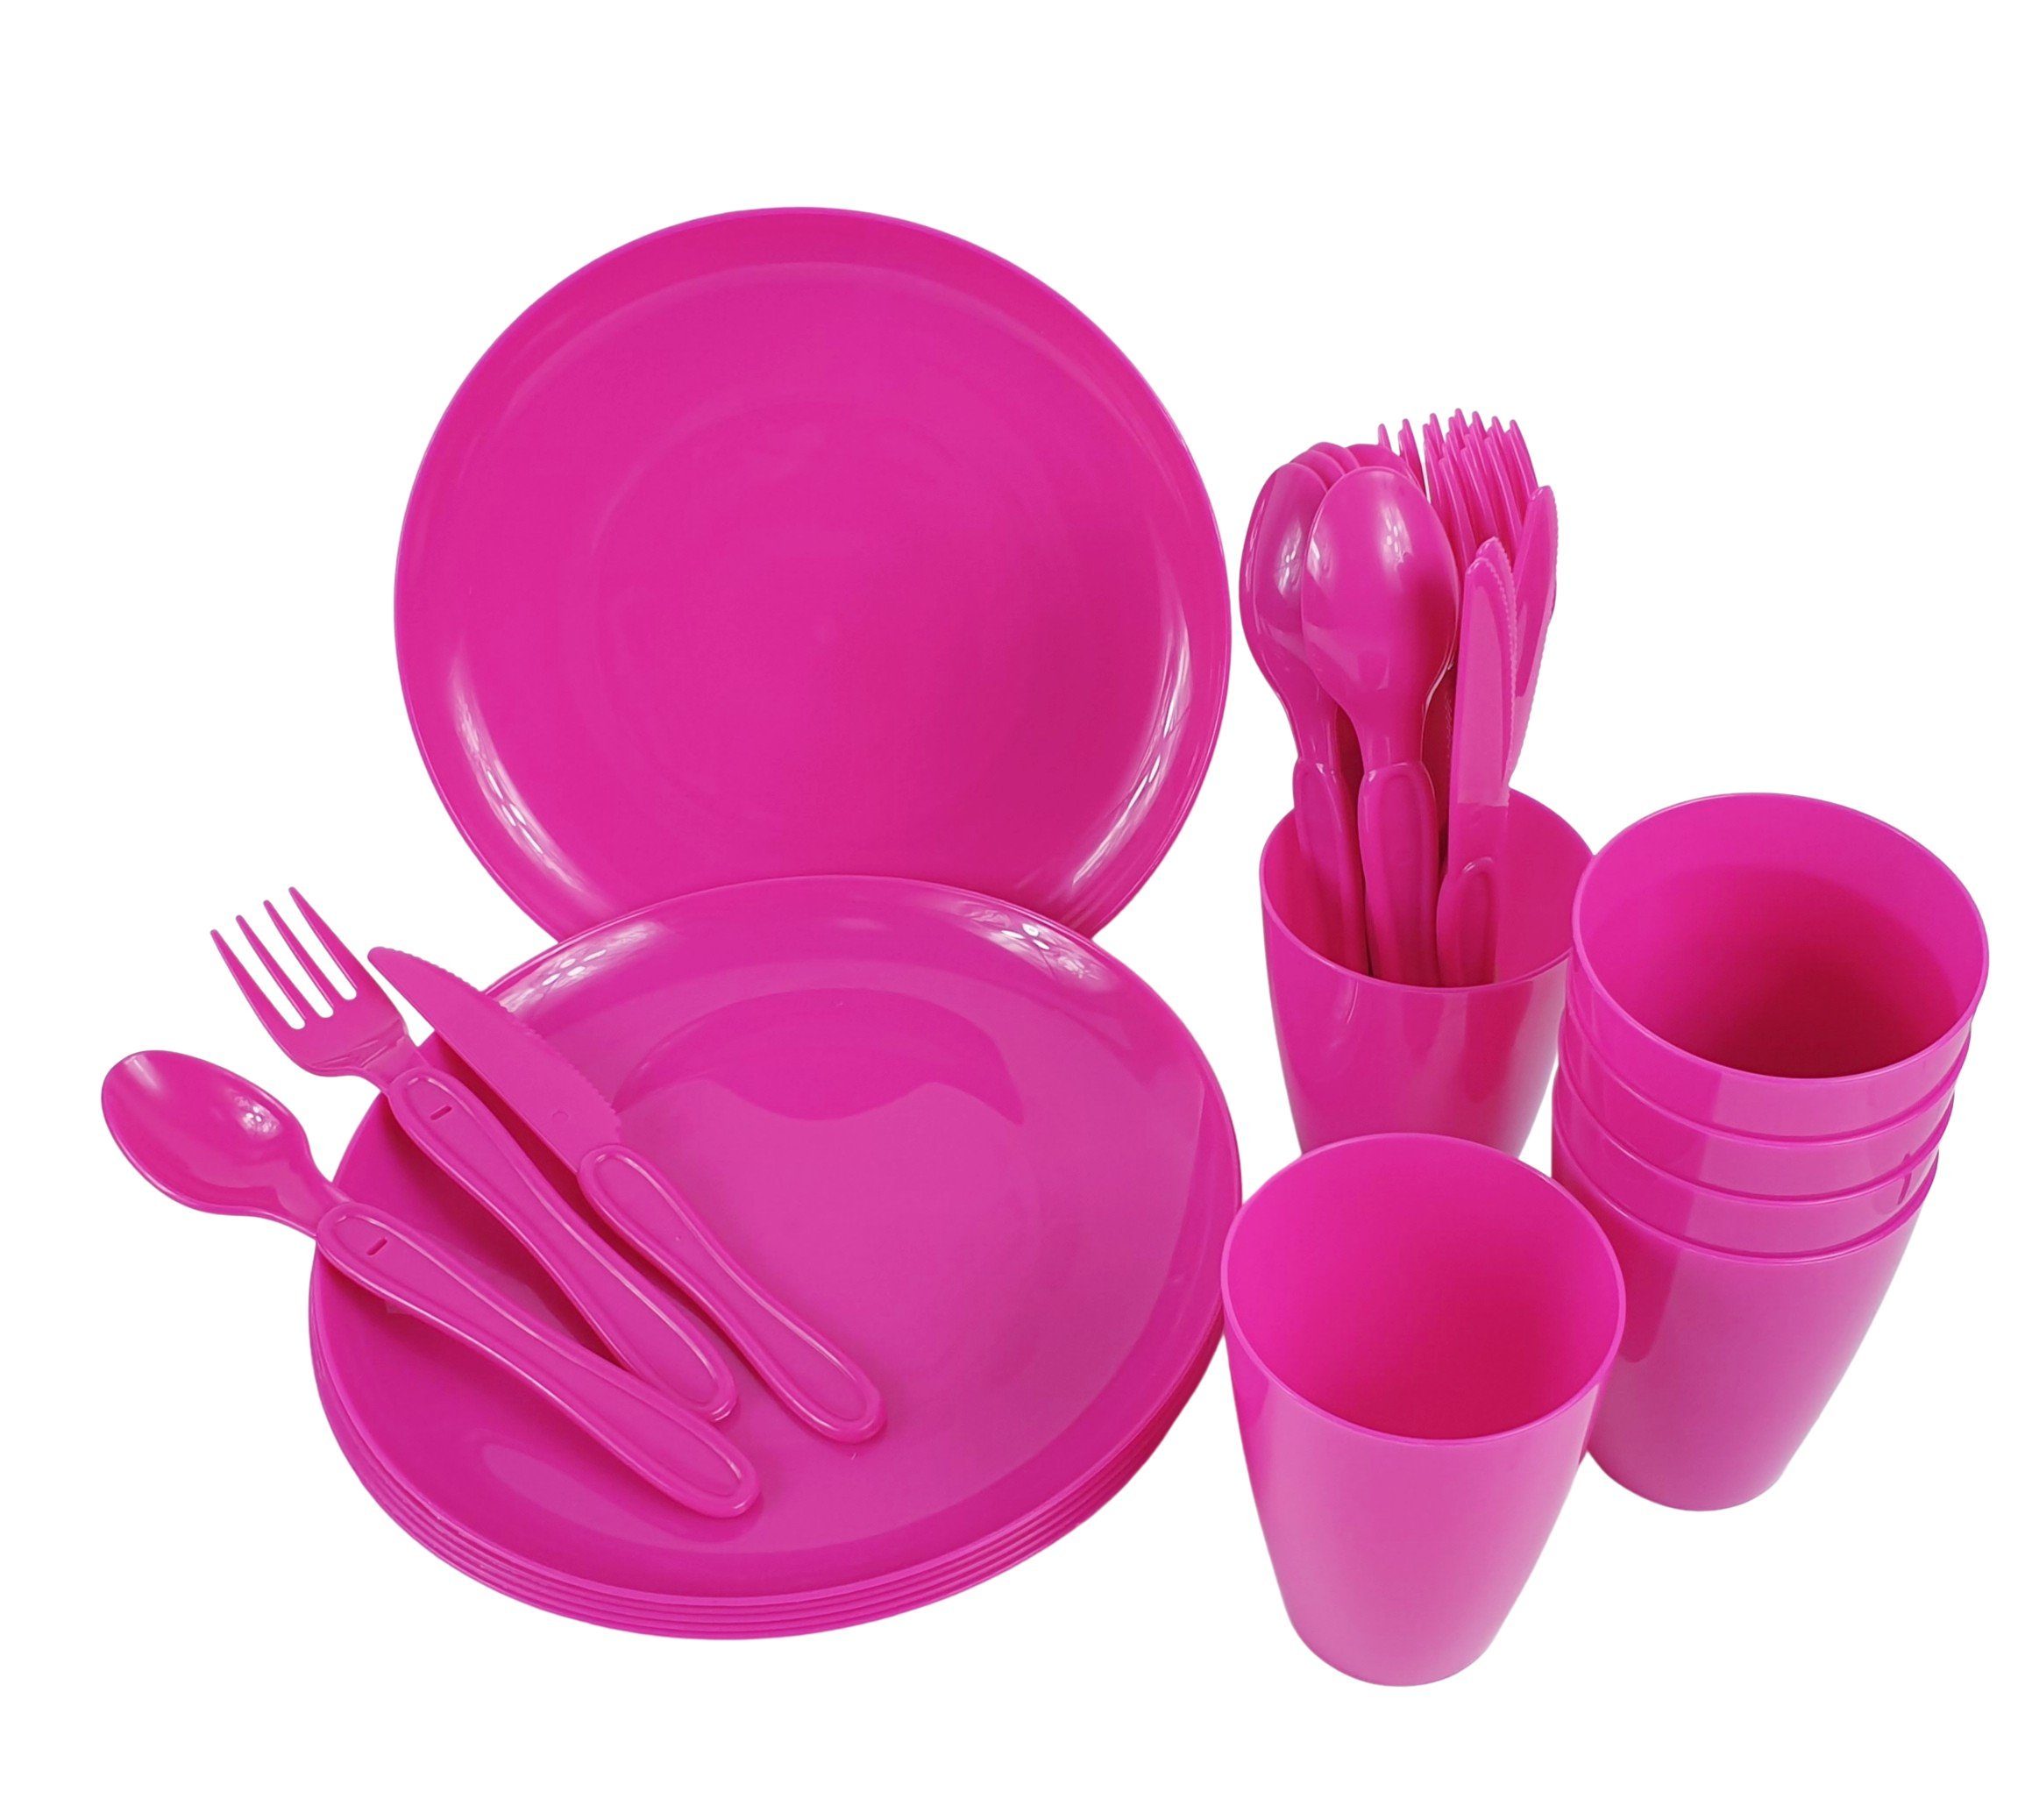 Picknick pink 4 teilig sesua Box, 31 mit Picknickgeschirr Geschirr-Set Personen Set Geschirr